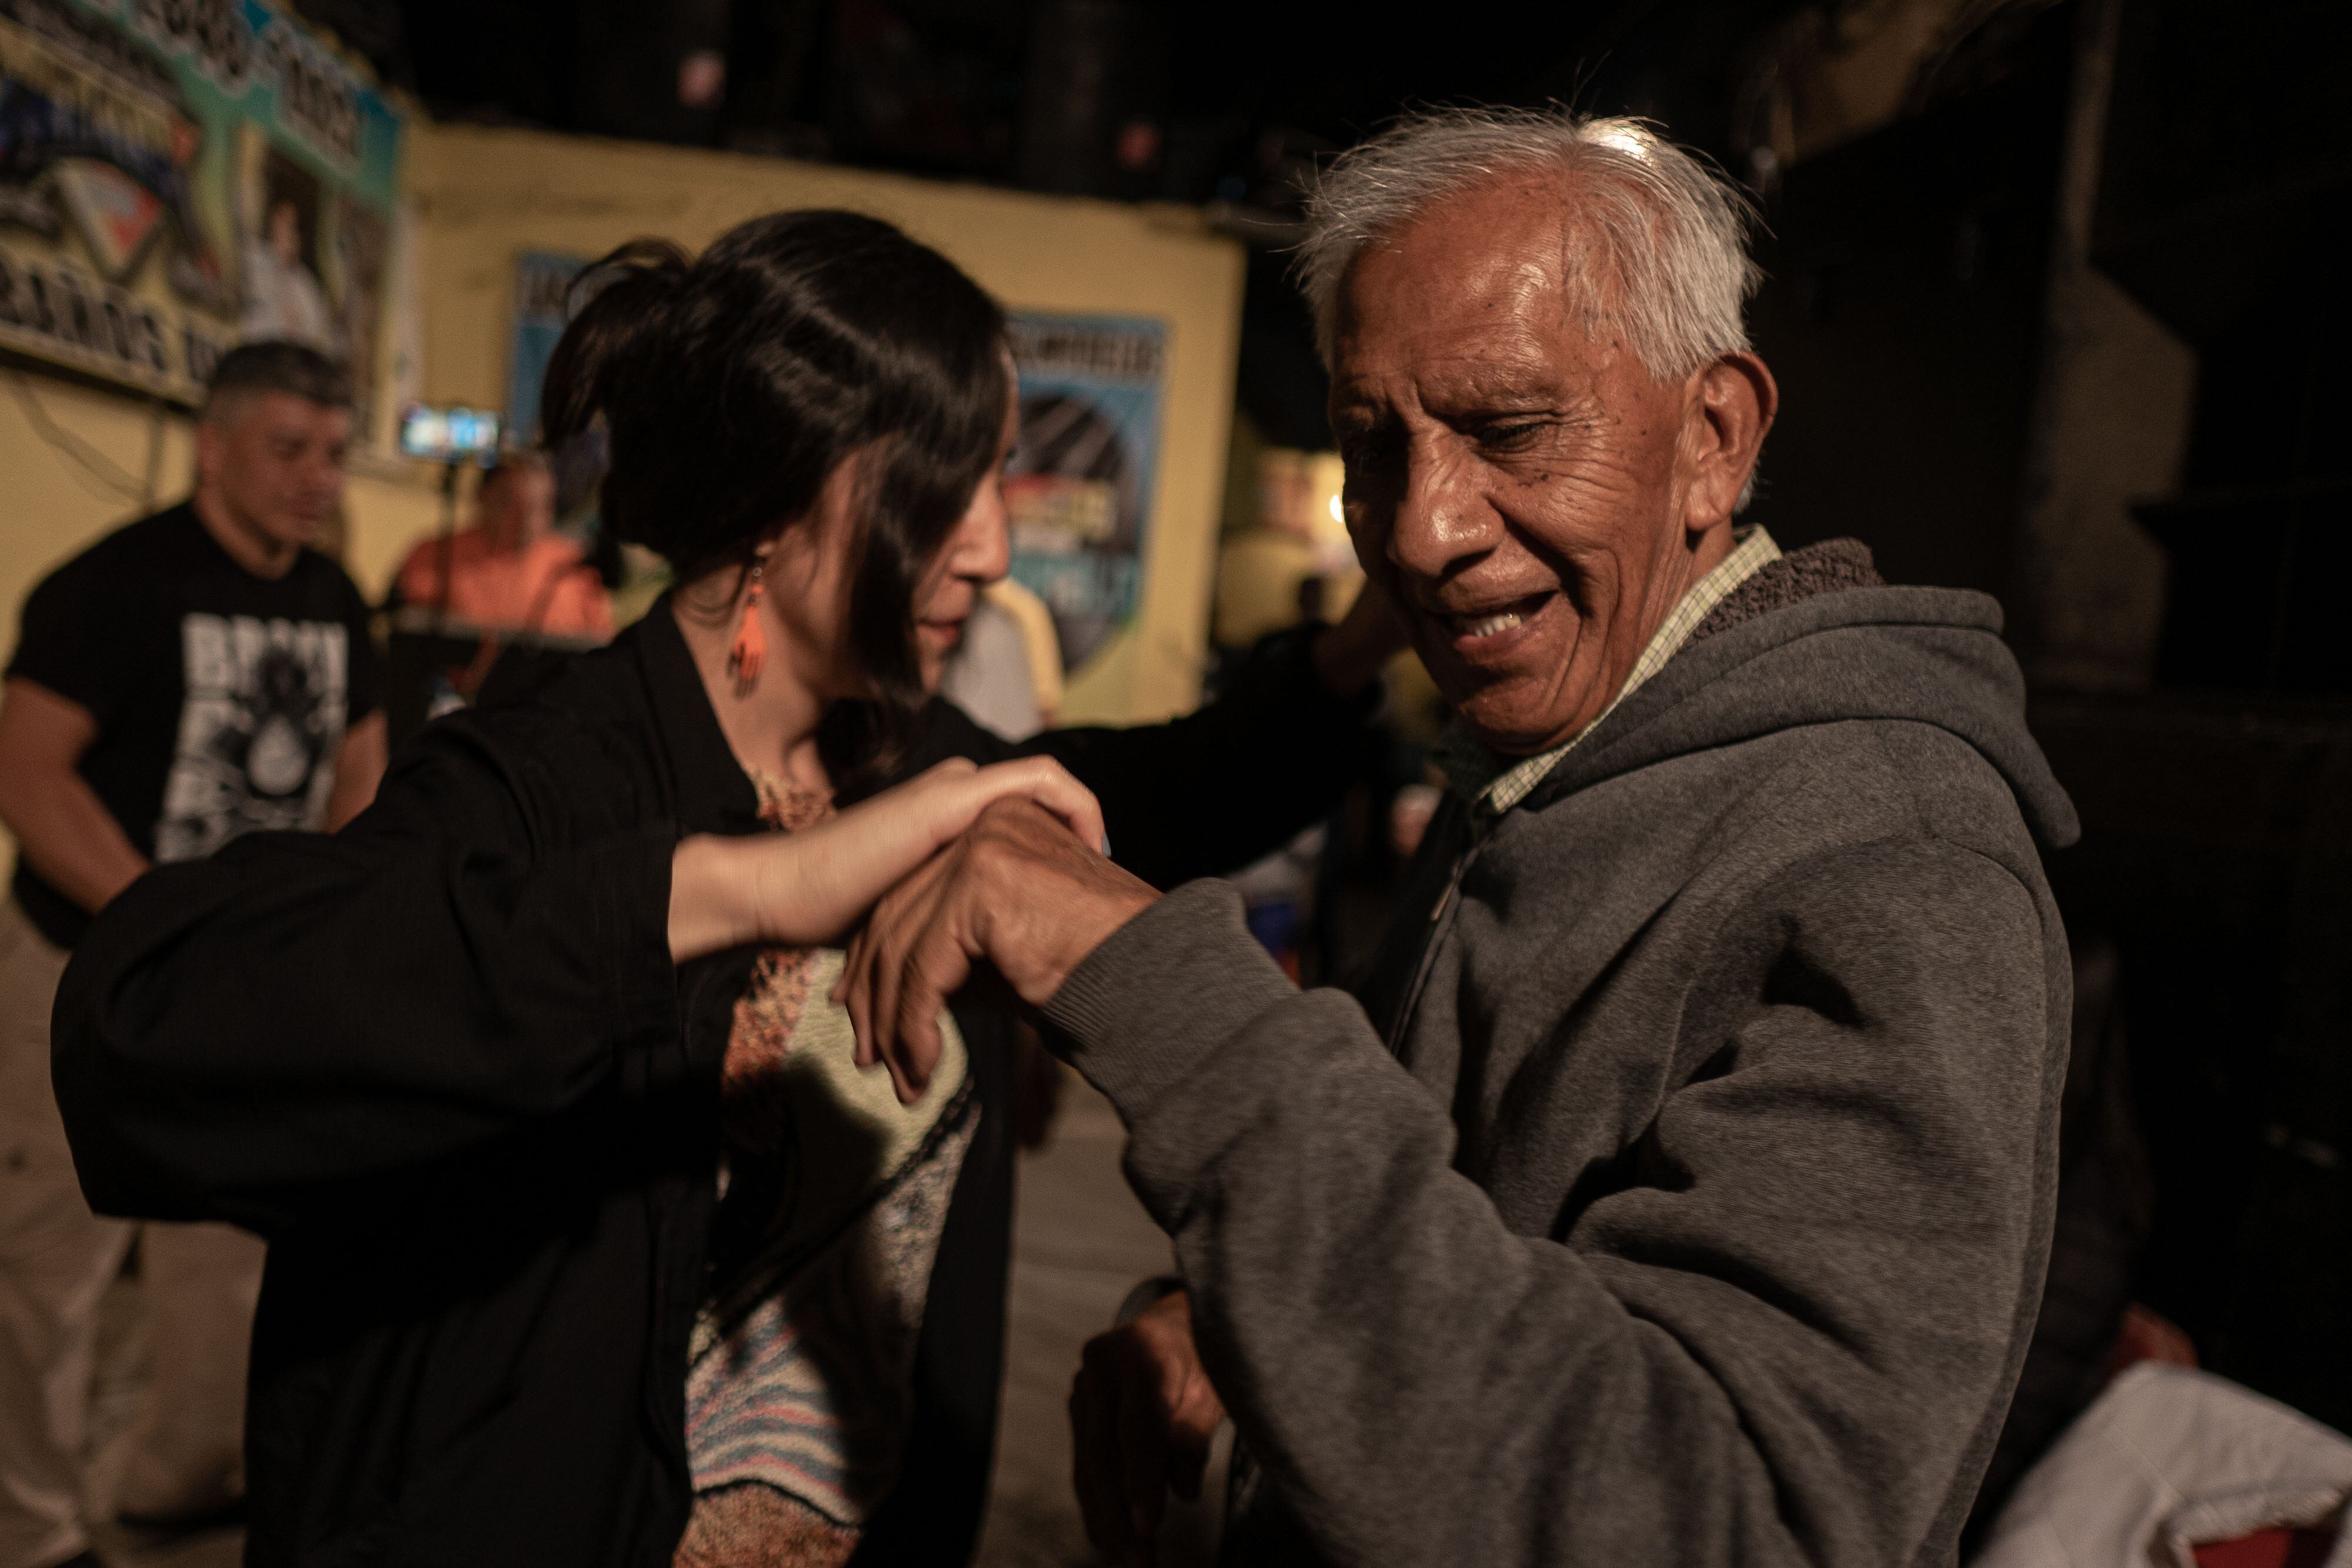 Discos Morelos (José Ortega) baila en pareja durante la fiesta musicalizada por Sonido Tacuba, Sonido Arce el Pachuco y Continental 2000.